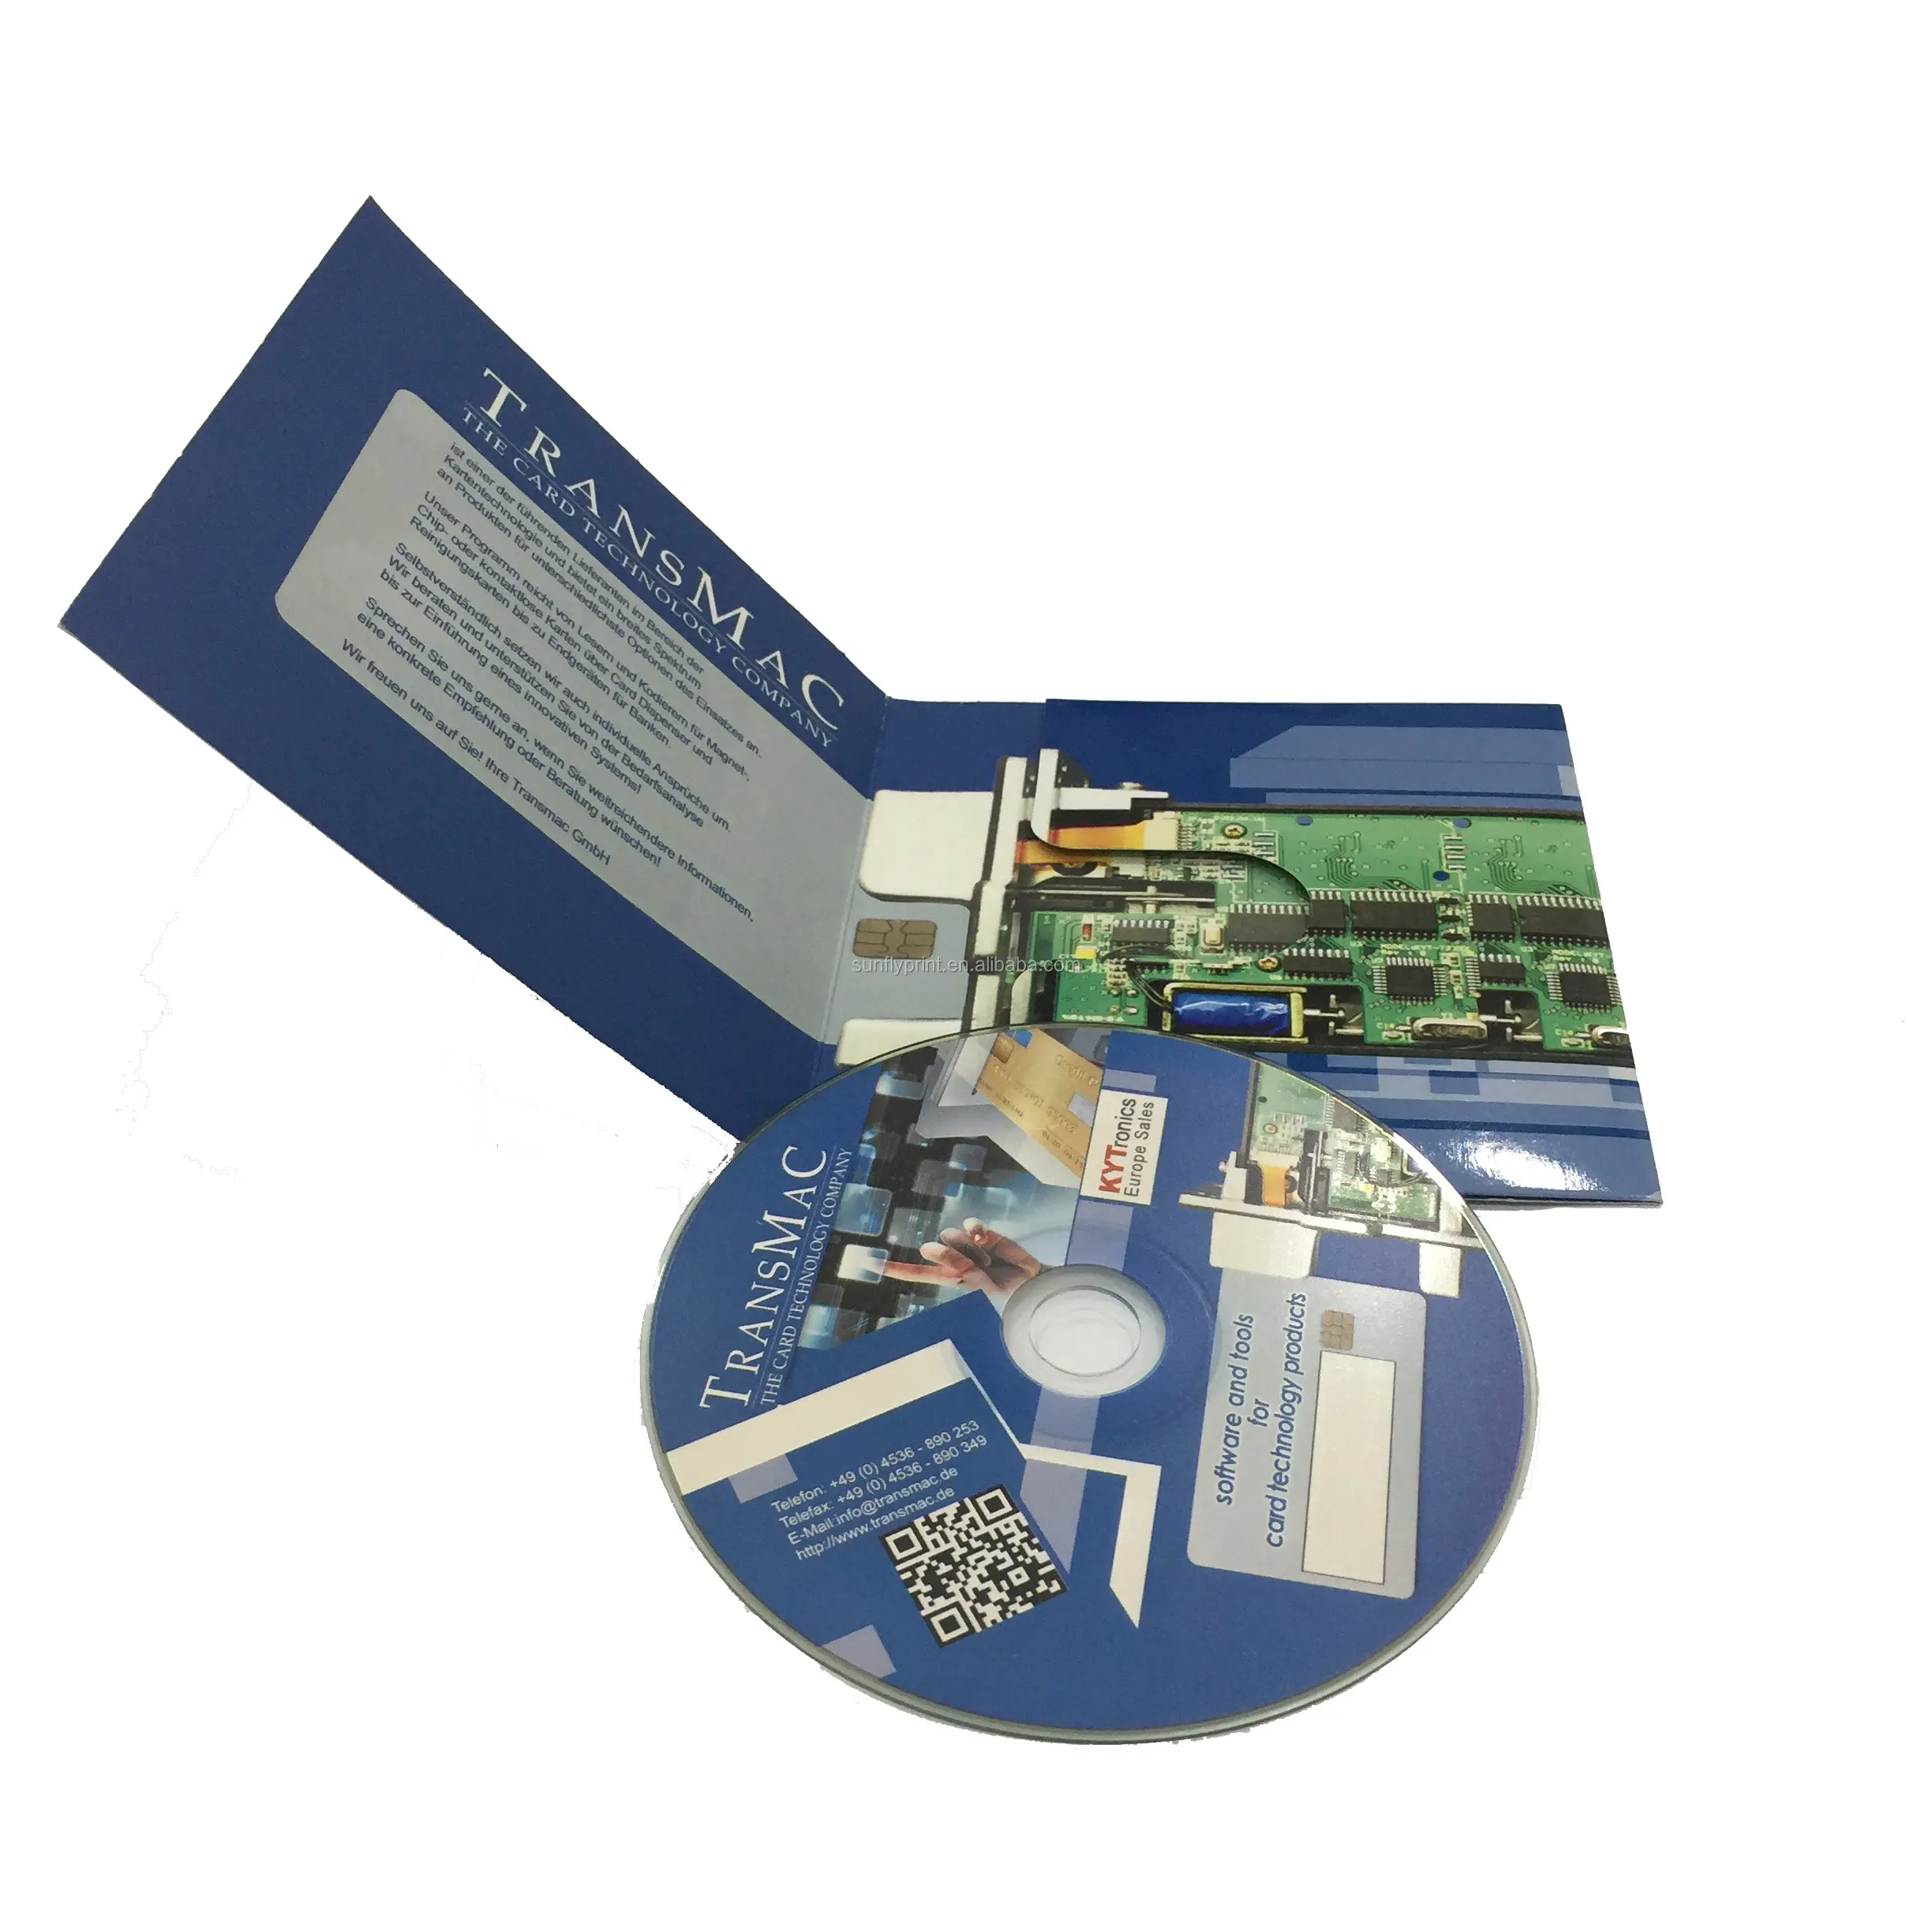 Angepasst größen Hohe Qualität Volle Farbe Sattel Stich a5 Kleine Luxus DVD Ordner Günstigste Professionelle cd Broschüre Druck